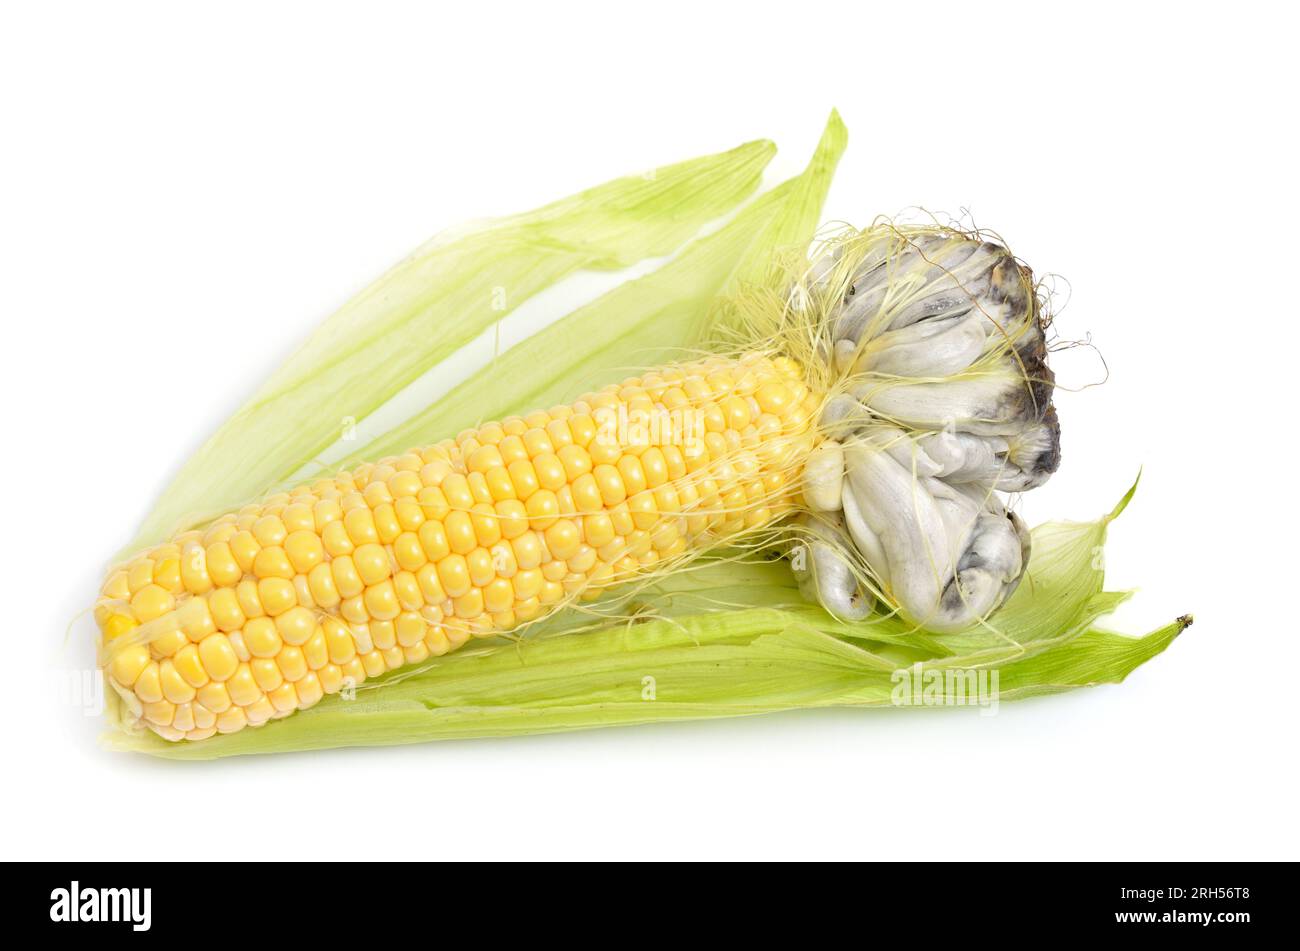 Le charbon de maïs est une maladie des plantes causée par le champignon pathogène Ustilago maydis. Isolé sur fond blanc. Banque D'Images